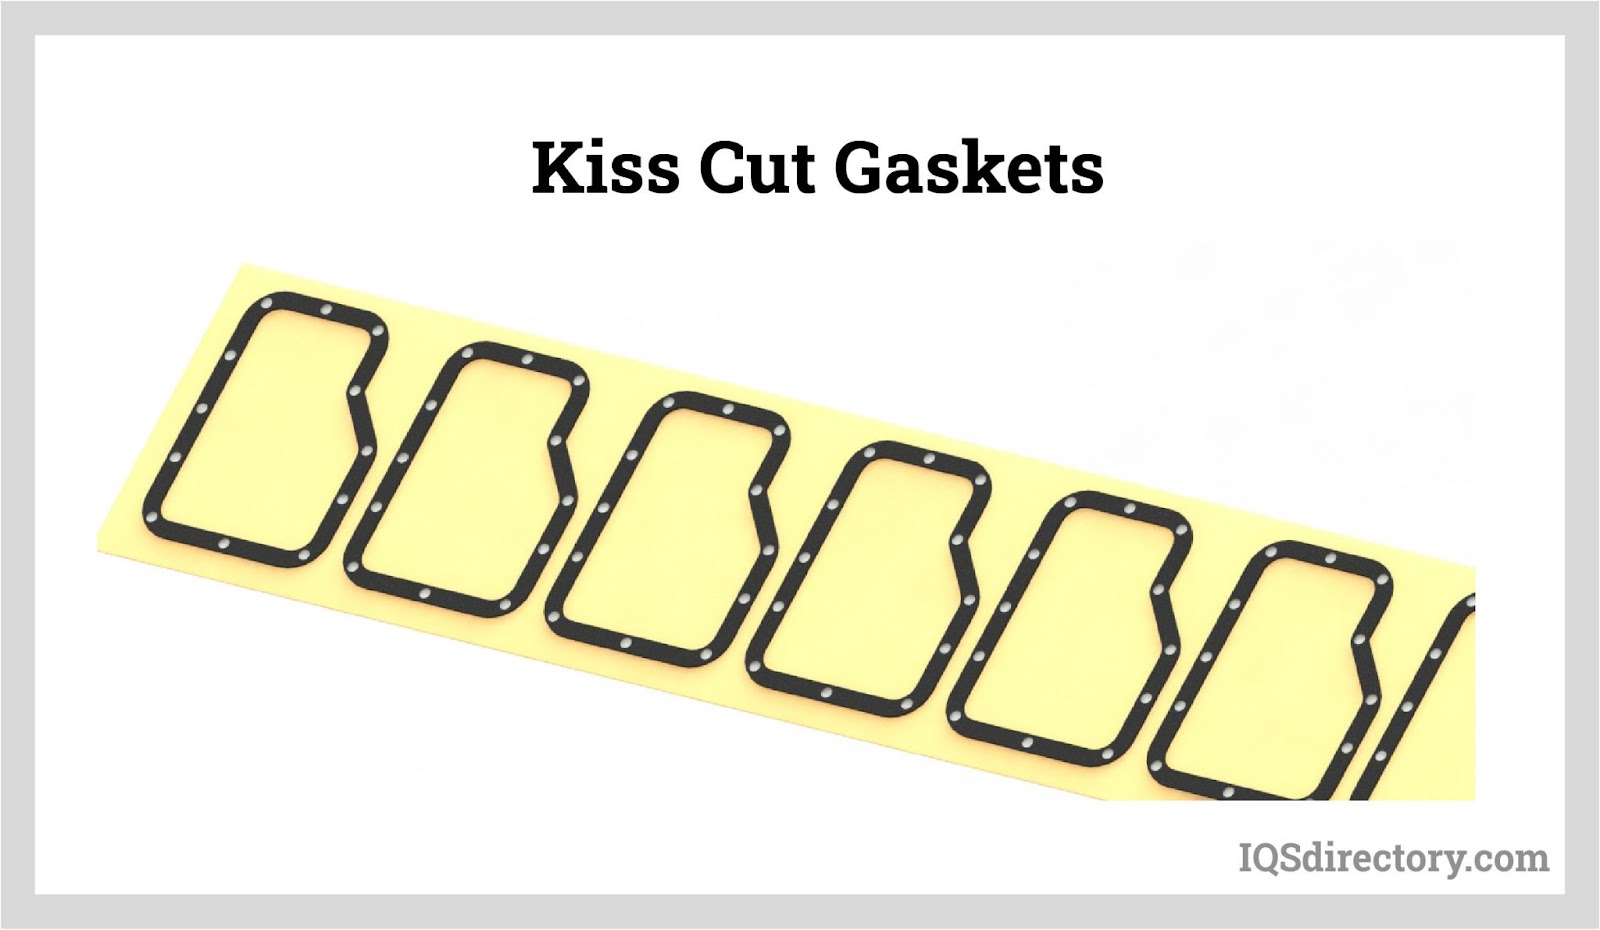 Kiss Cut Gaskets